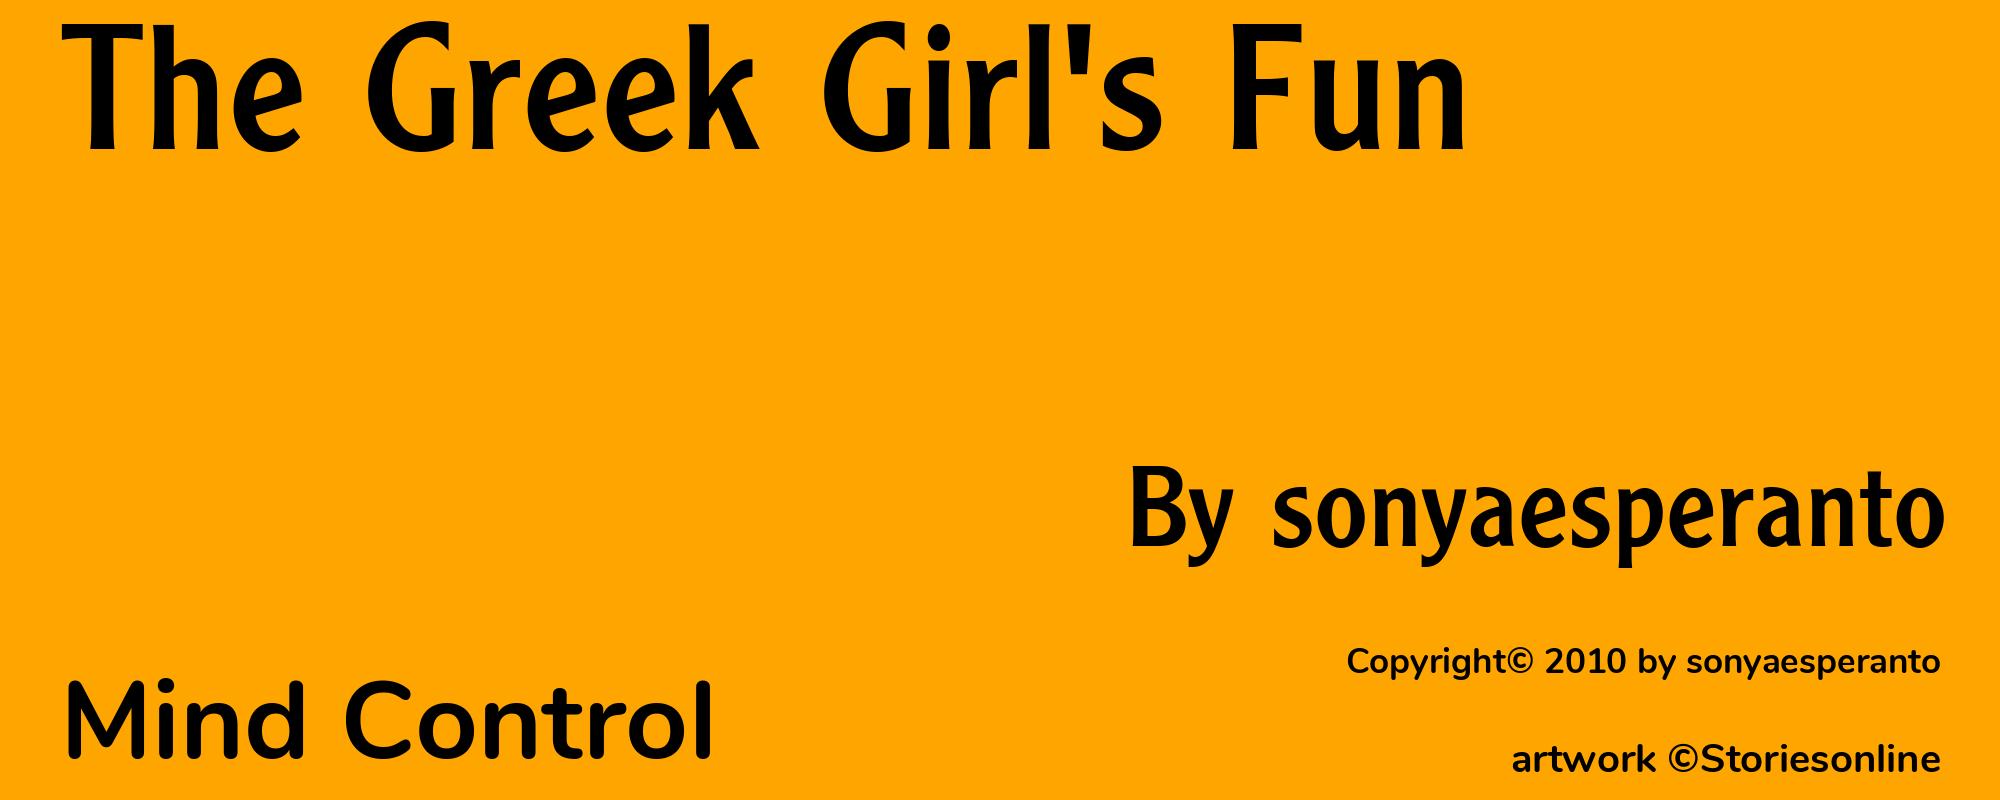 The Greek Girl's Fun - Cover